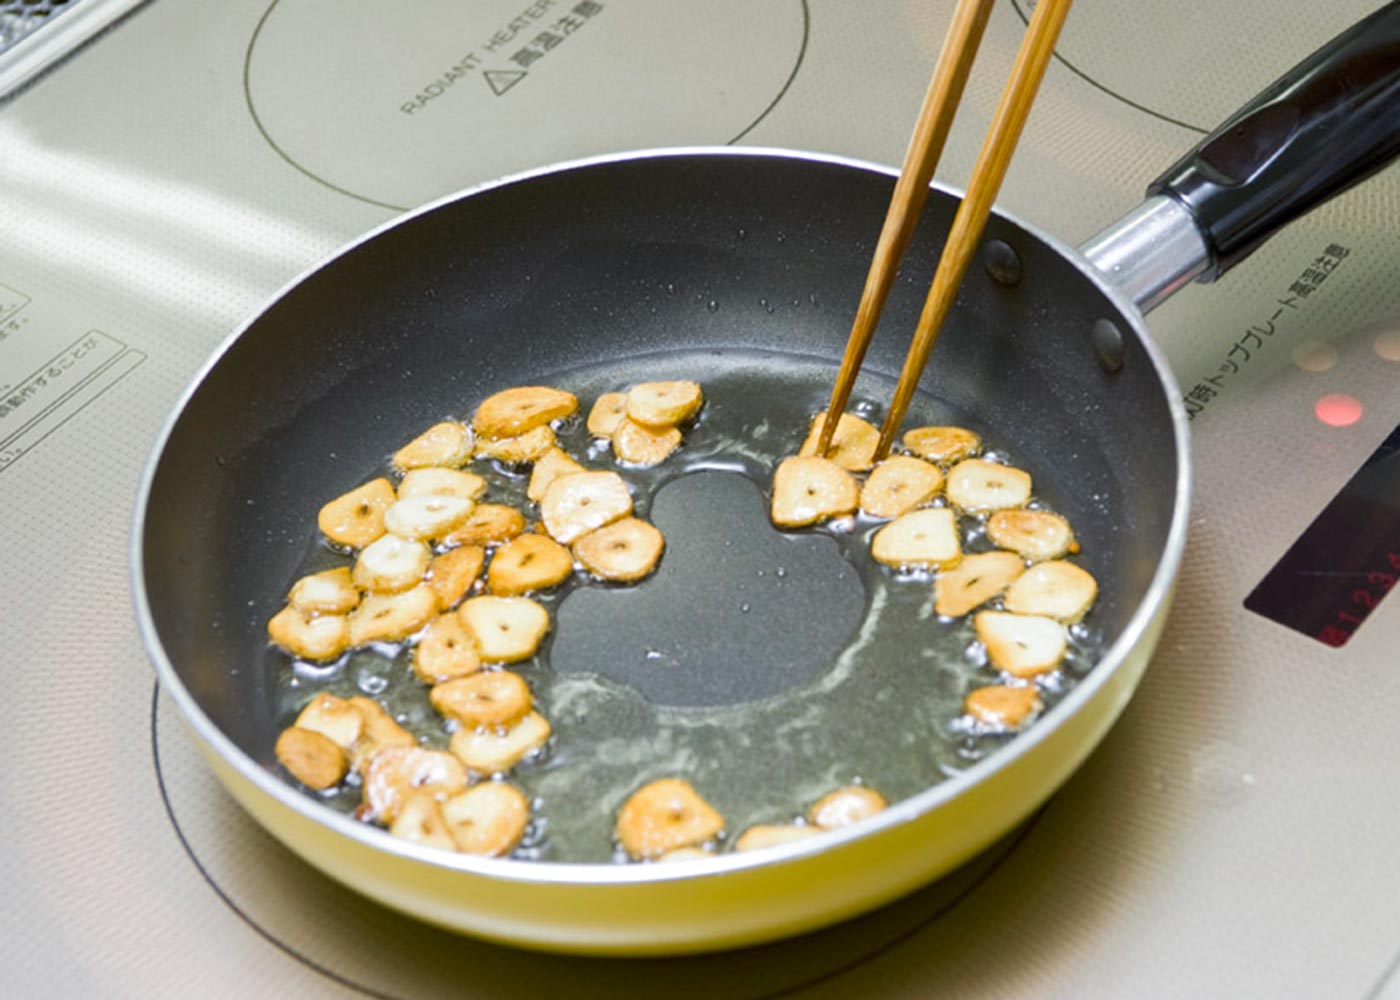 にんにくは両端を落として竹串で芯を取り、幅２㎜のスライスにする。鍋にオリーブ油を入れて弱火にかけ、にんにくを炒め始める。